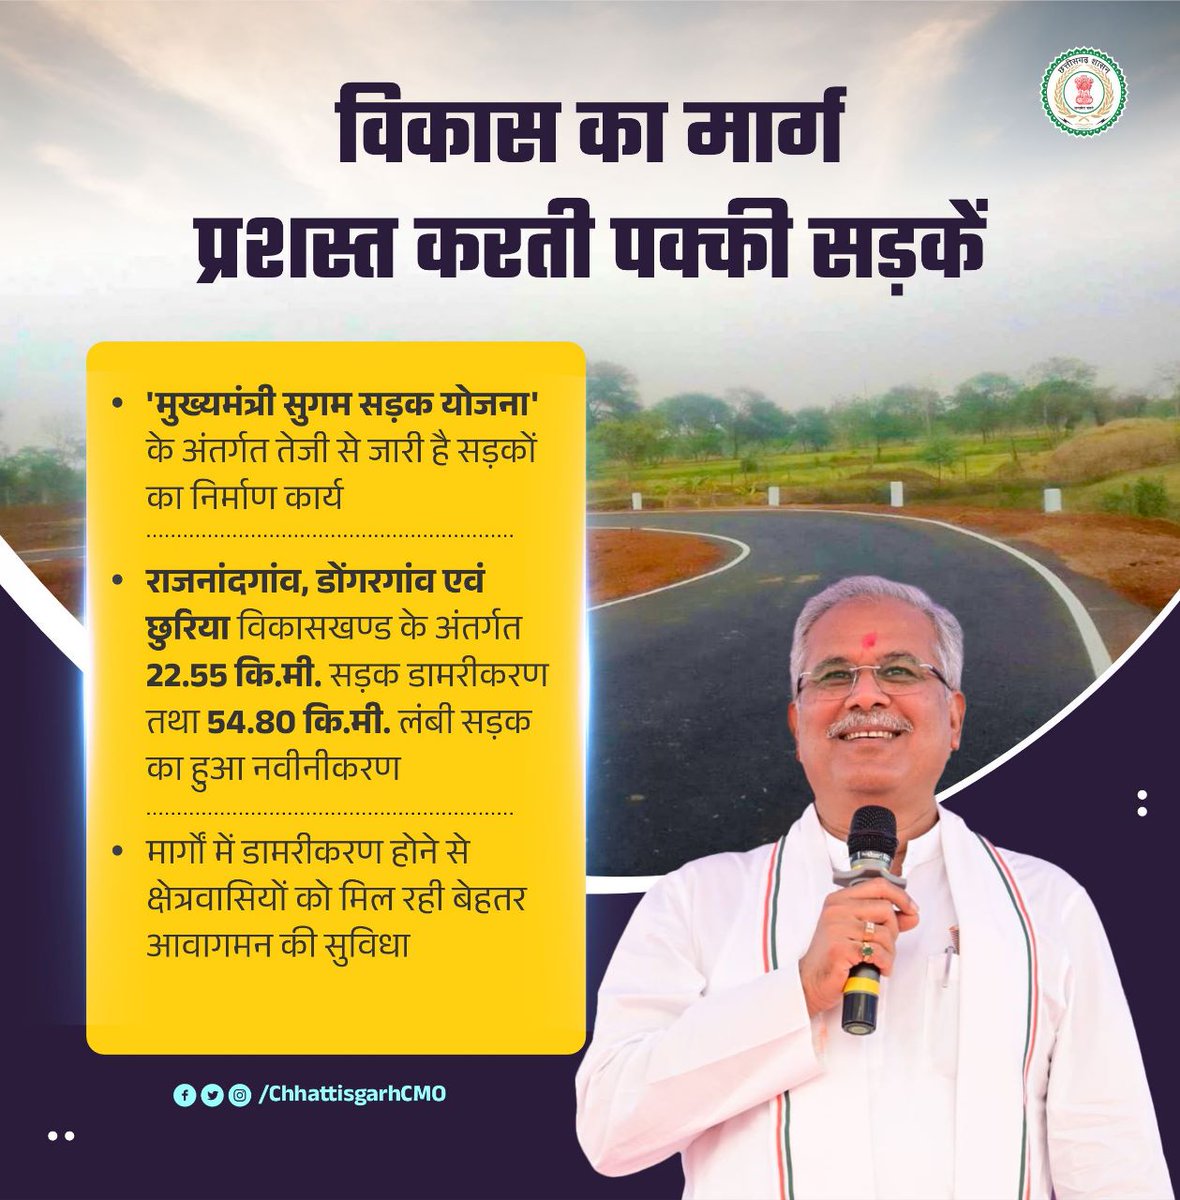 मुख्यमंत्री श्री @bhupeshbaghel के निर्देश पर प्रदेश की जनता के सुगम आवागमन हेतु प्राथमिकता से हो रहे सड़क निर्माण, चौड़ीकरण, नवीनीकरण एवं मरम्मत के कार्य। 

#cgdevelopment #GoodGovernance #road 
#Chhattisgarh #CGModel